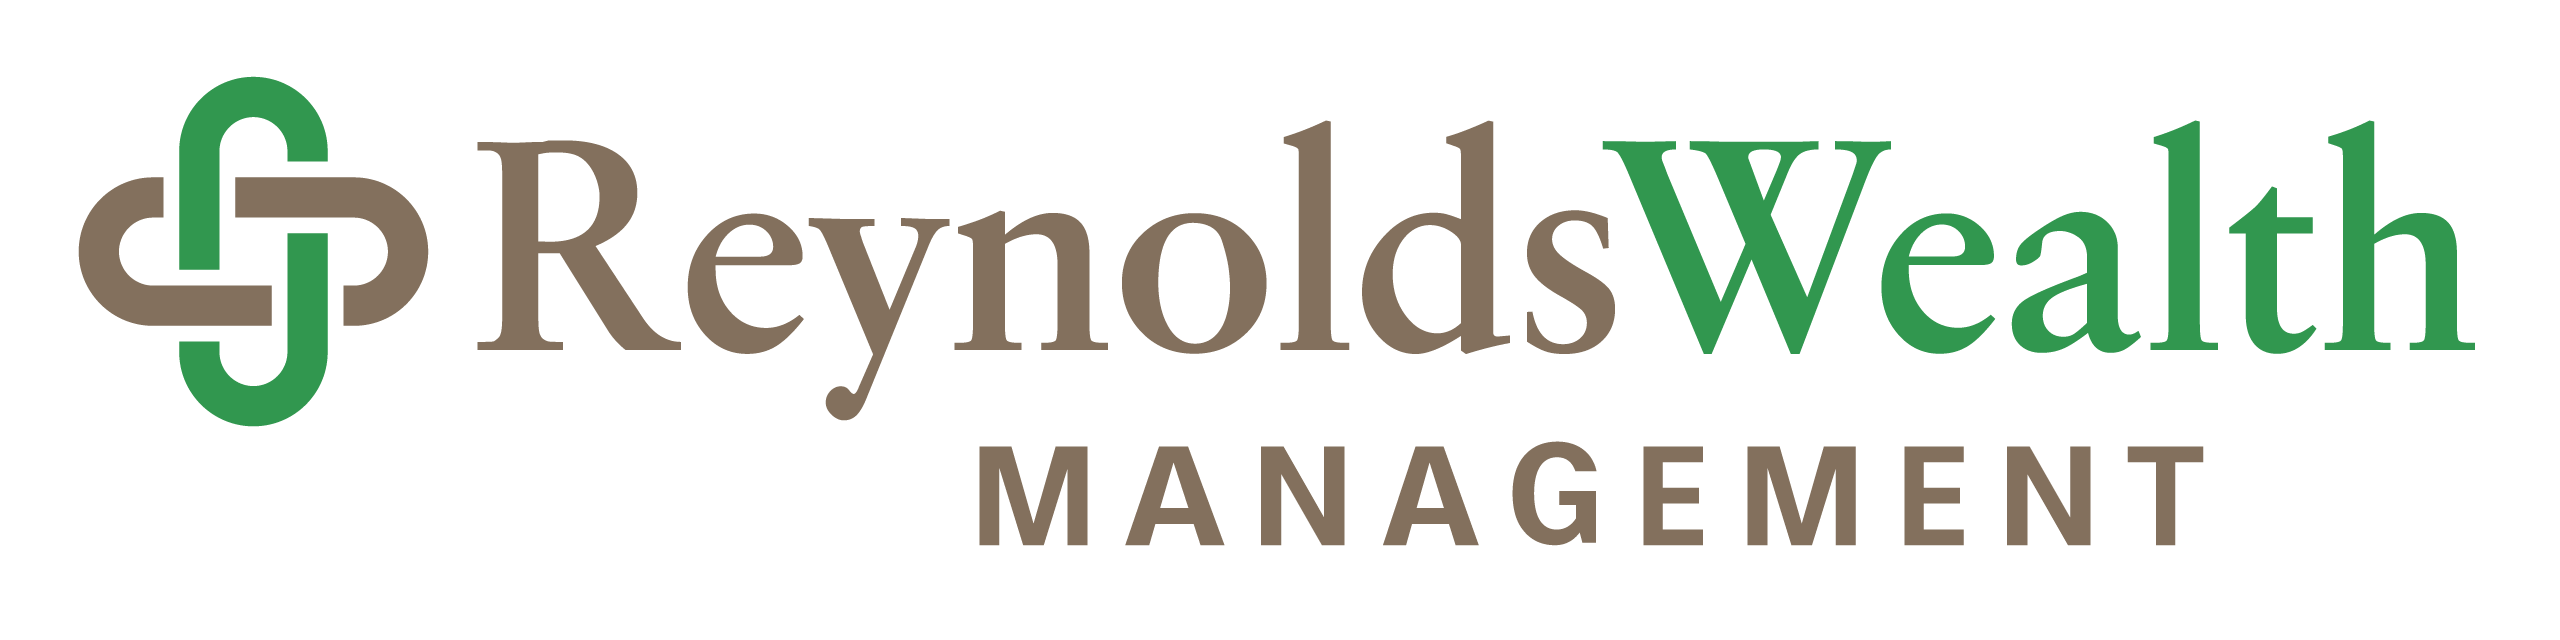 Reynolds wealth management